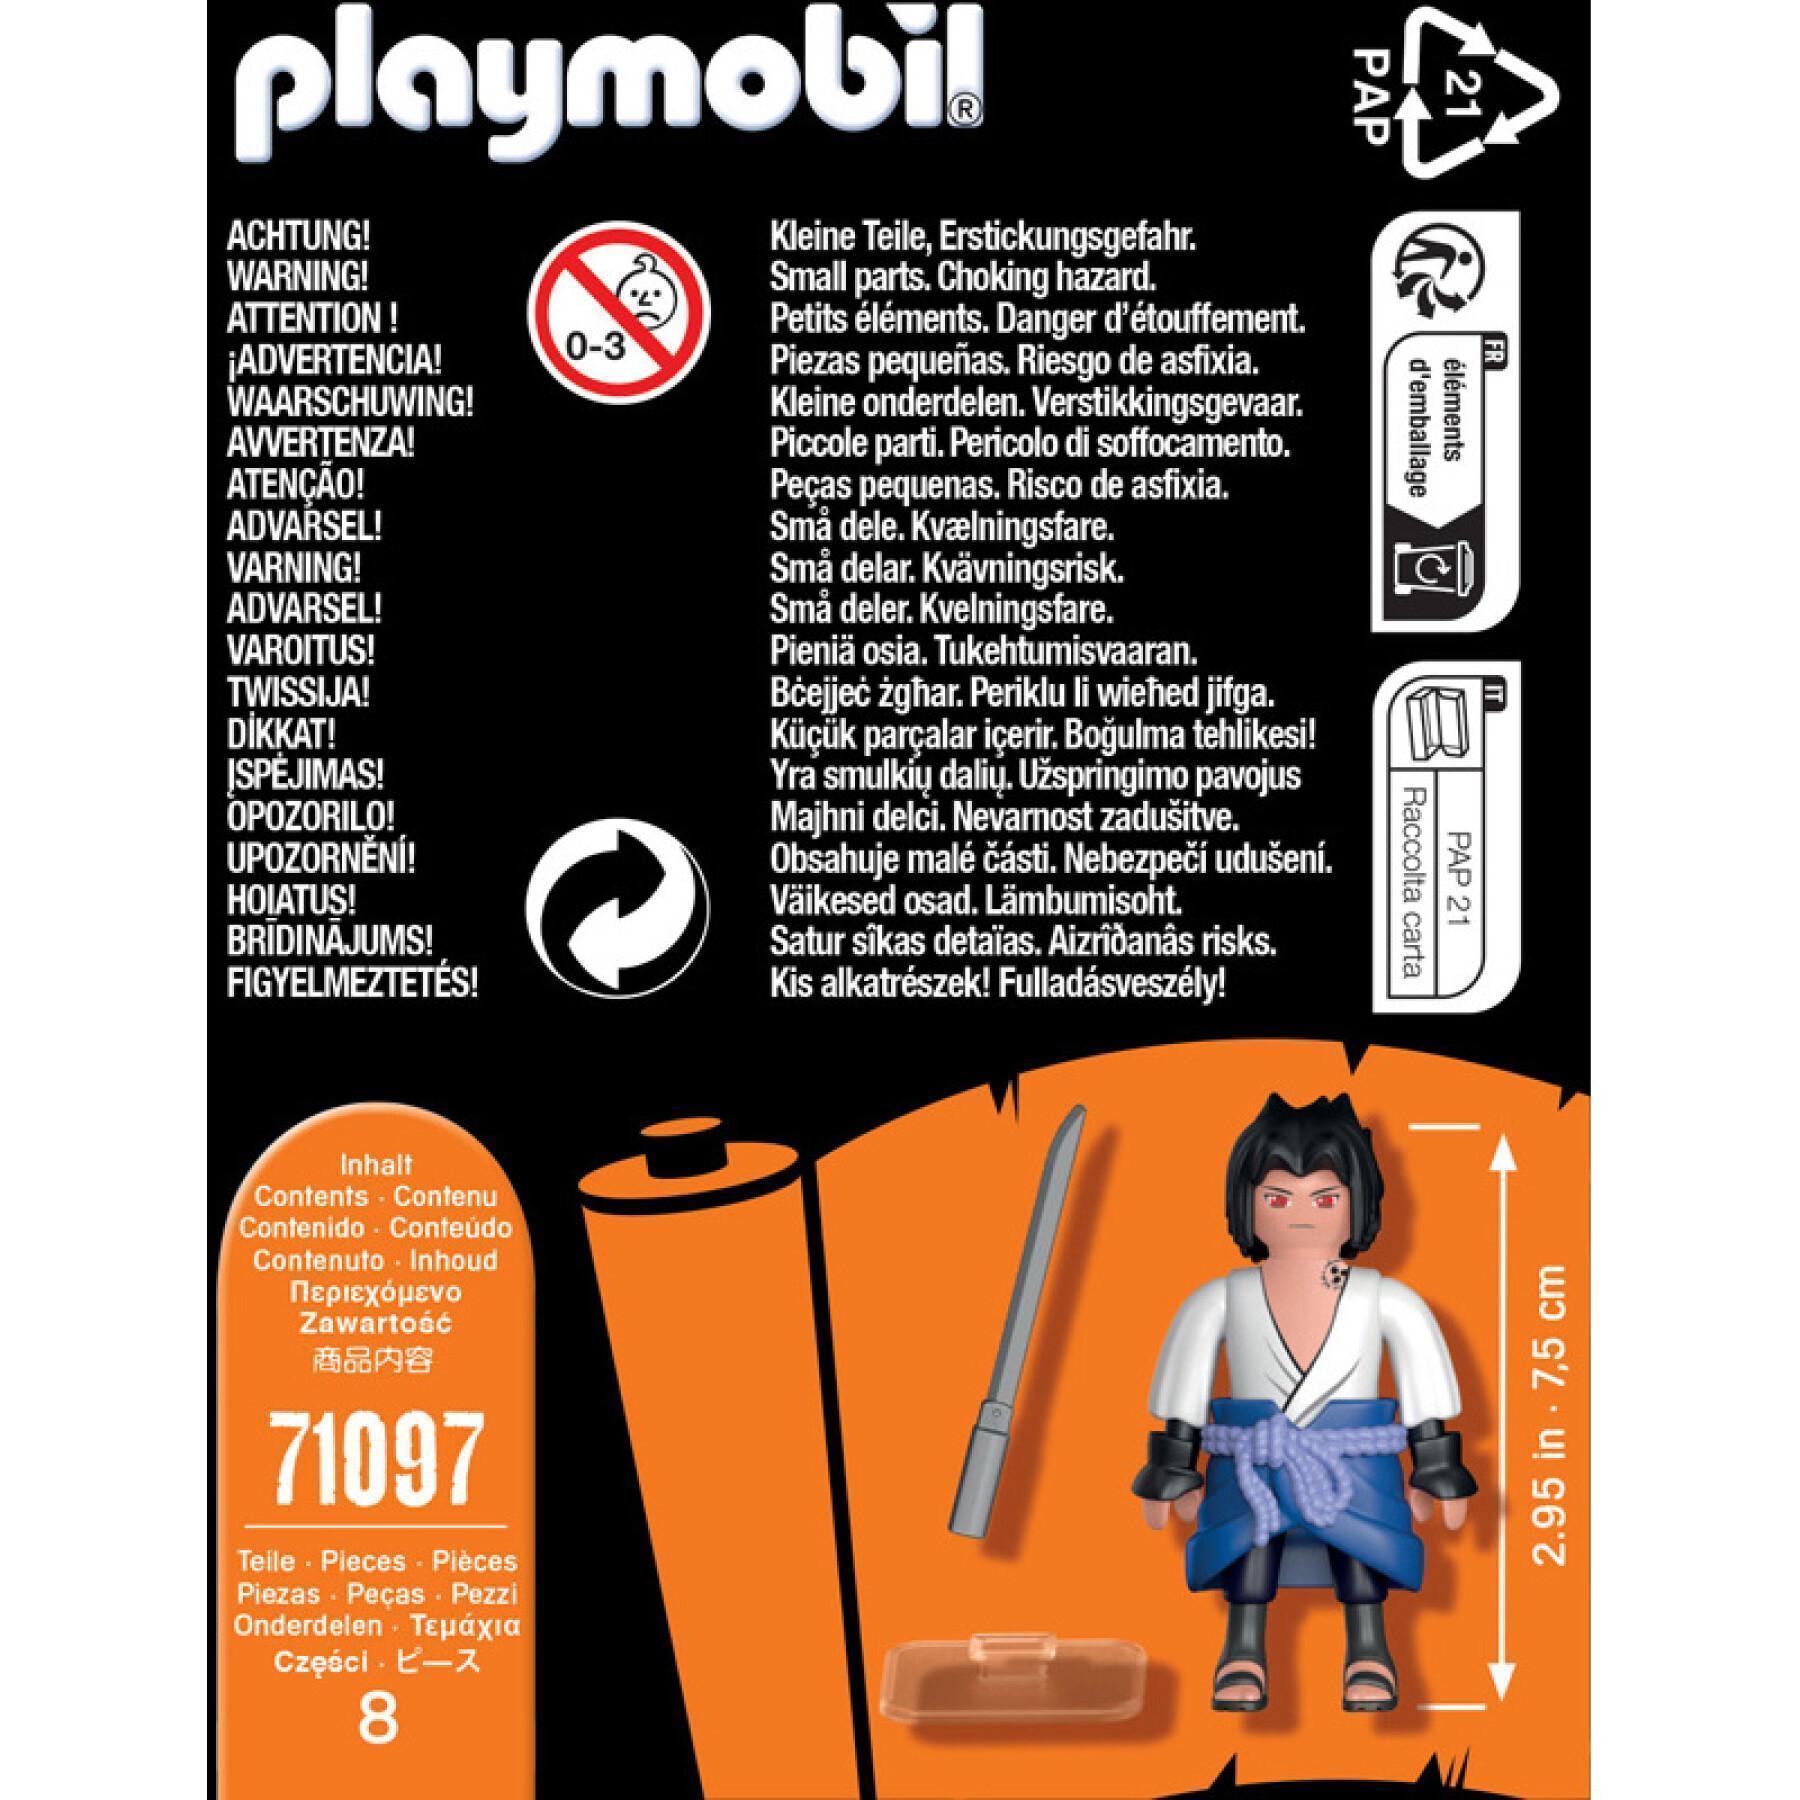 Figurinesuke naruto Playmobil